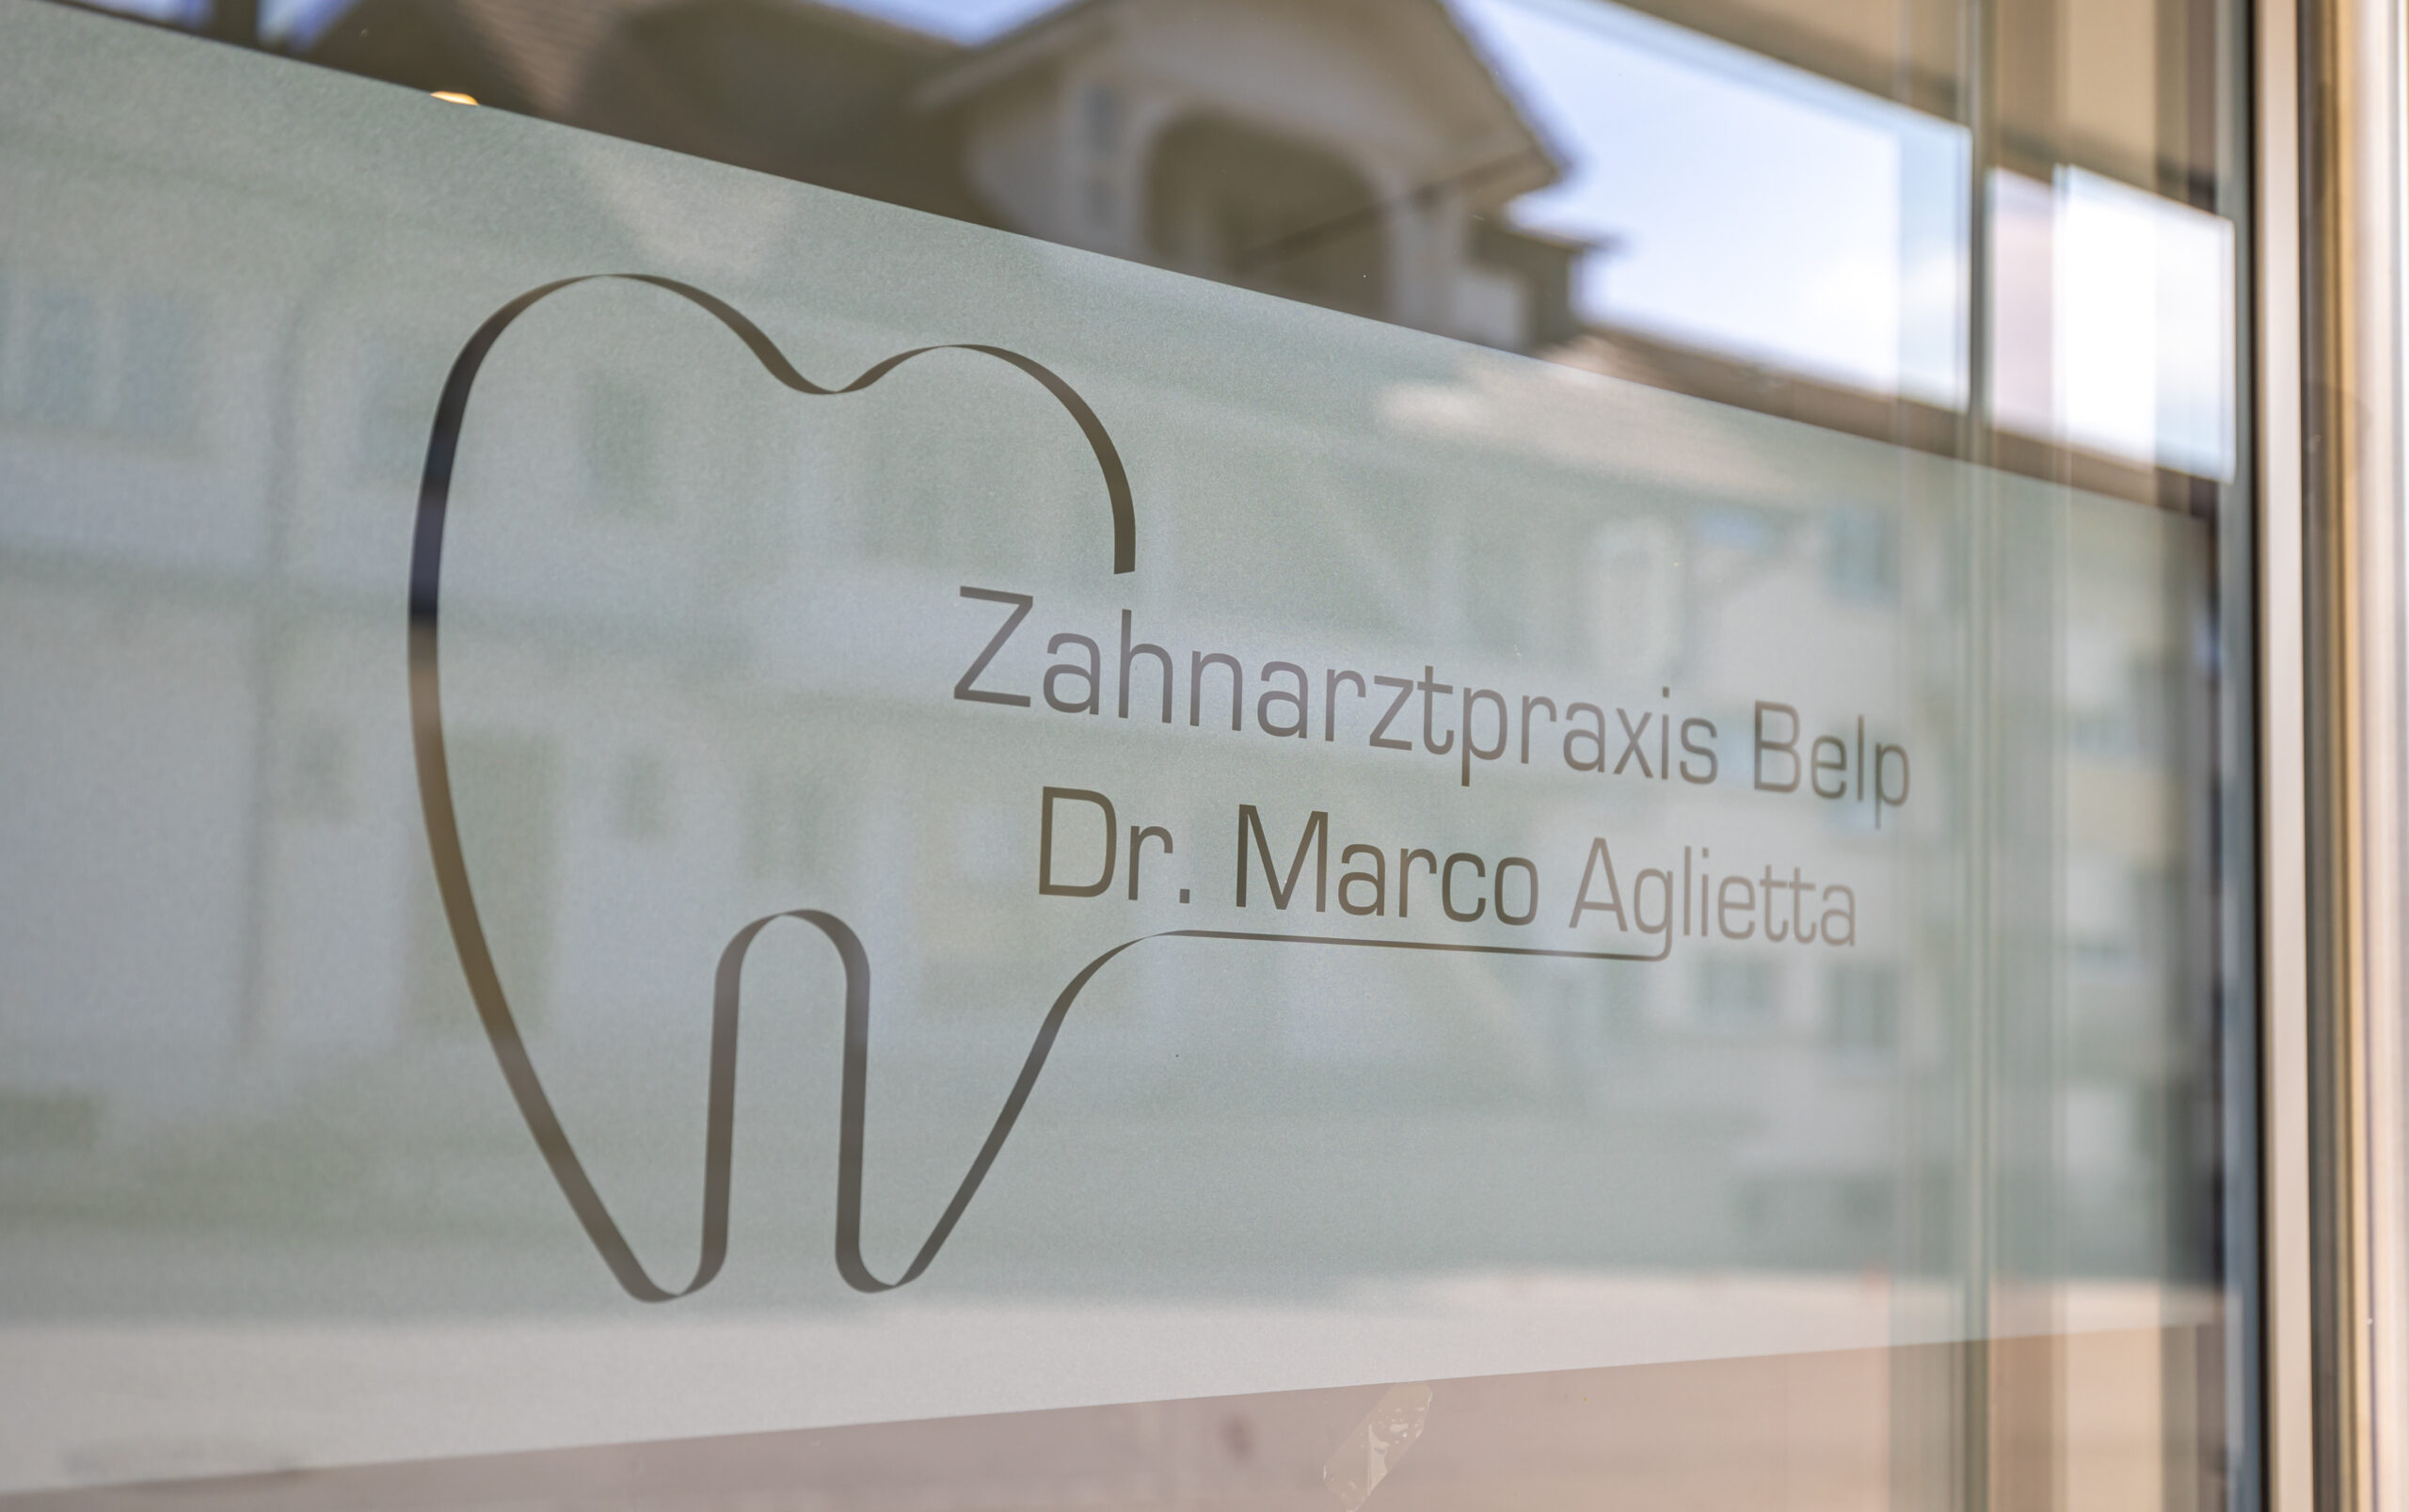 Schweizerische Gesellschaft für Parodontologie: Herzlich willkommen!